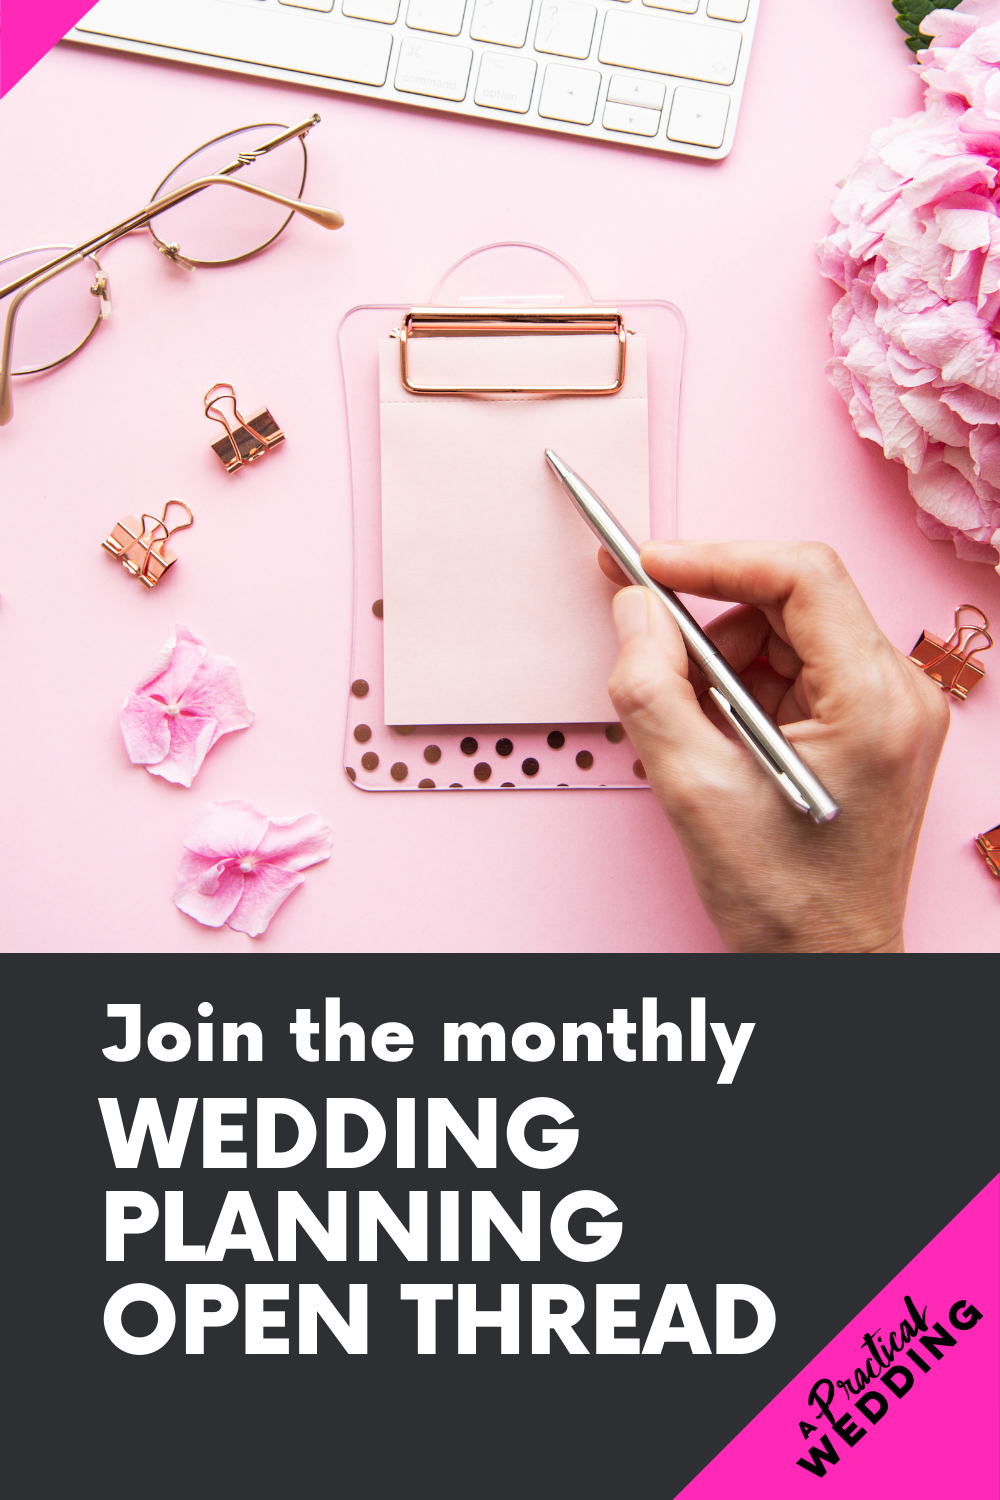 Join our monthly - Chuỗi mở kế hoạch đám cưới vào tháng 8 năm 2021